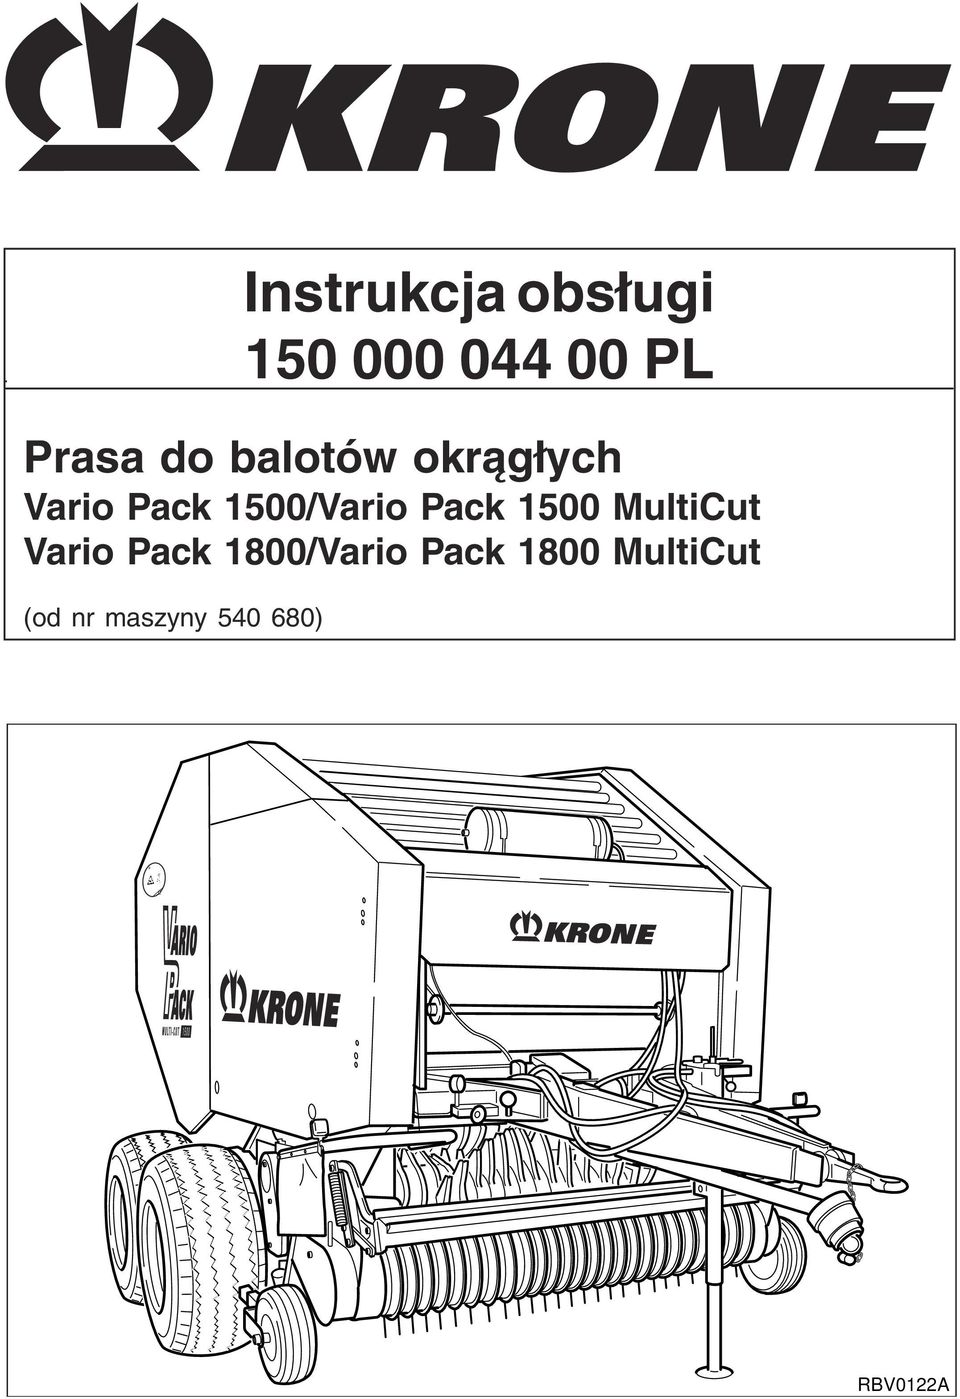 800/Vario Pack 800 MultiCut (od nr maszyny